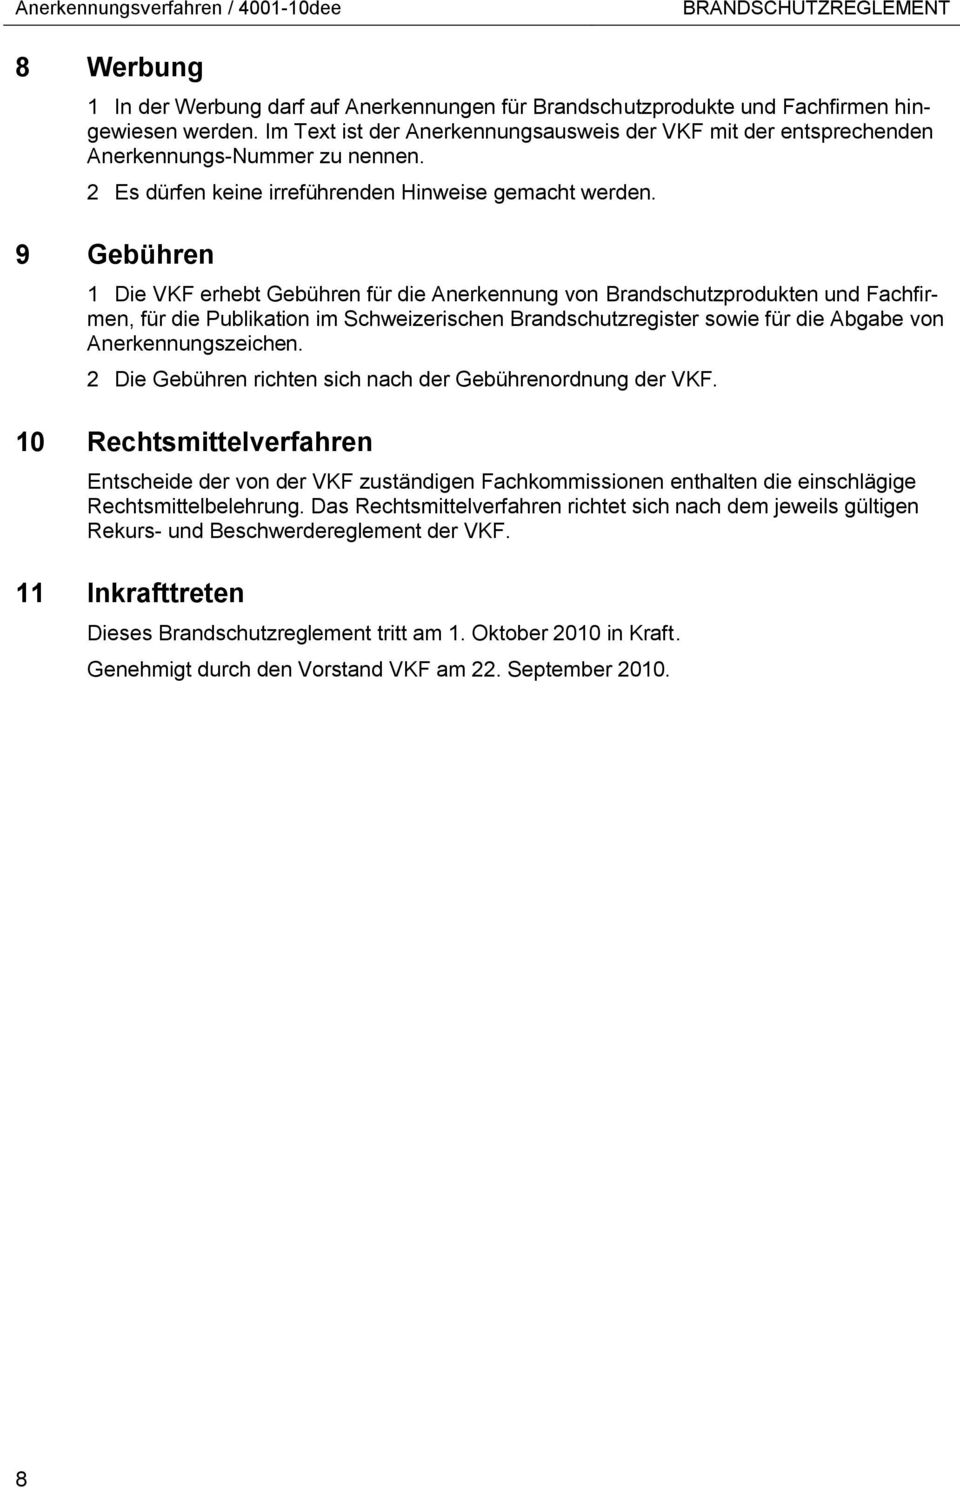 9 Gebühren 1 Die VKF erhebt Gebühren für die Anerkennung von Brandschutzprodukten und Fachfirmen, für die Publikation im Schweizerischen Brandschutzregister sowie für die Abgabe von